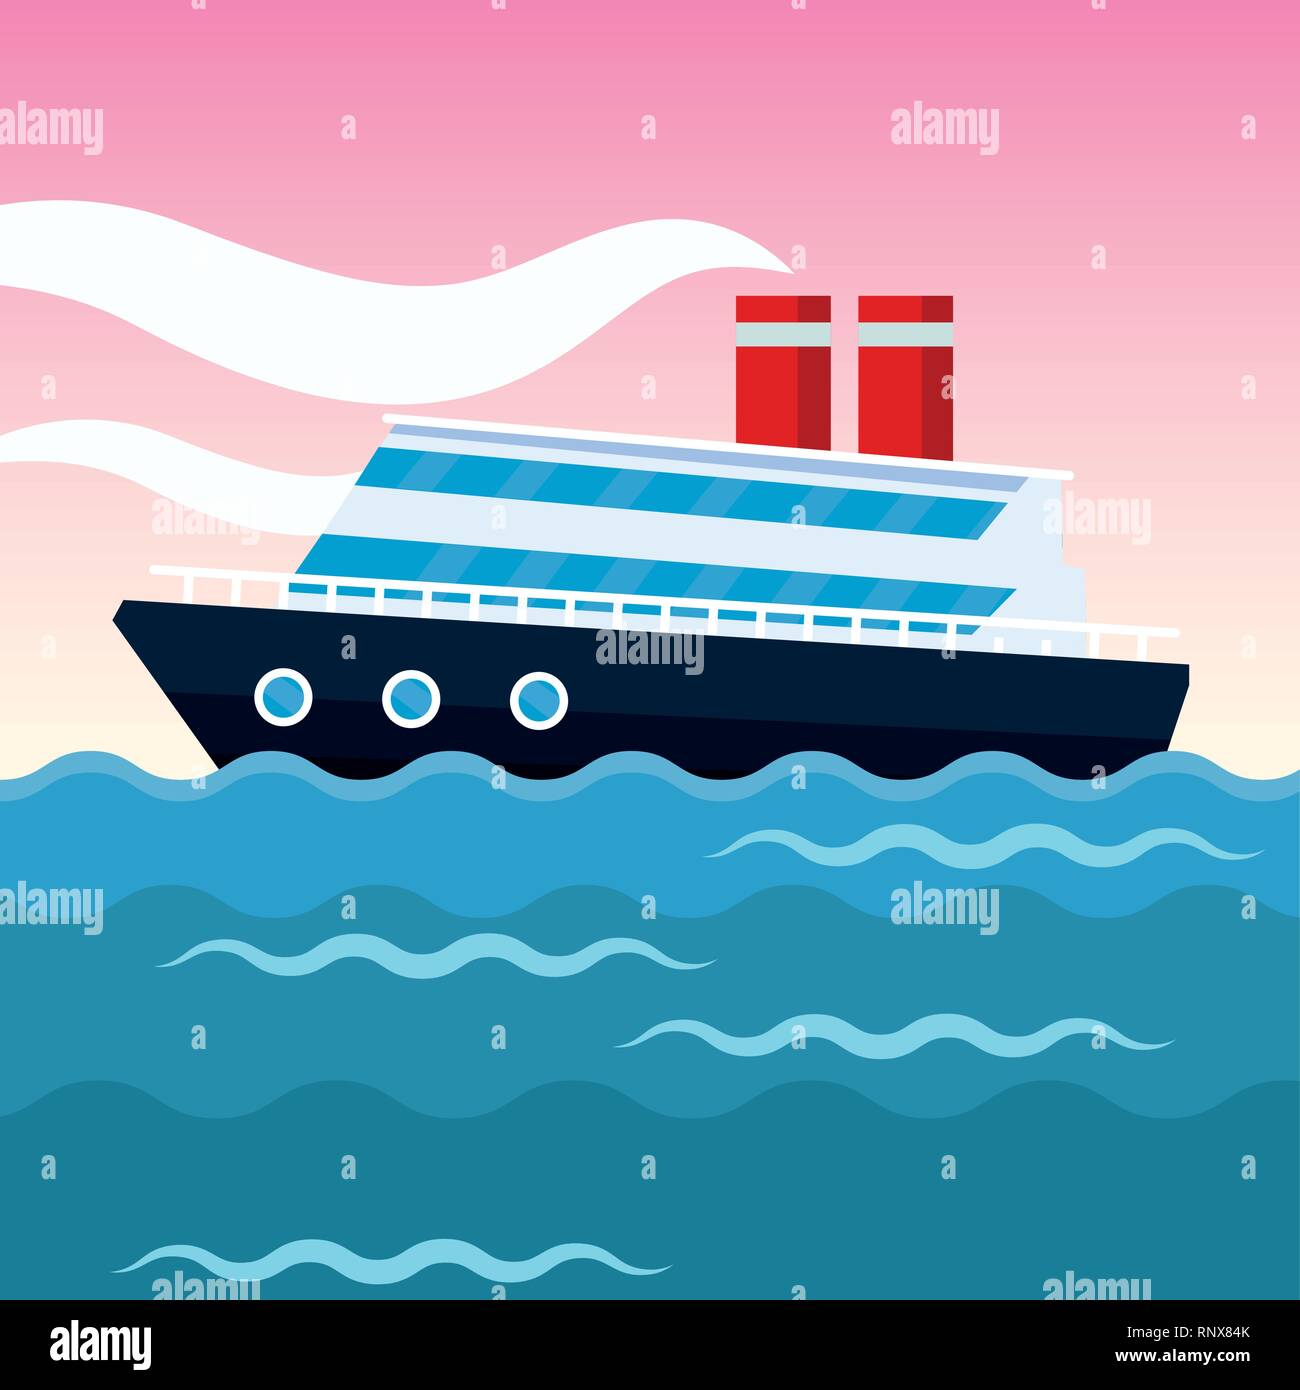 cruise ship cartoon Stock Vector